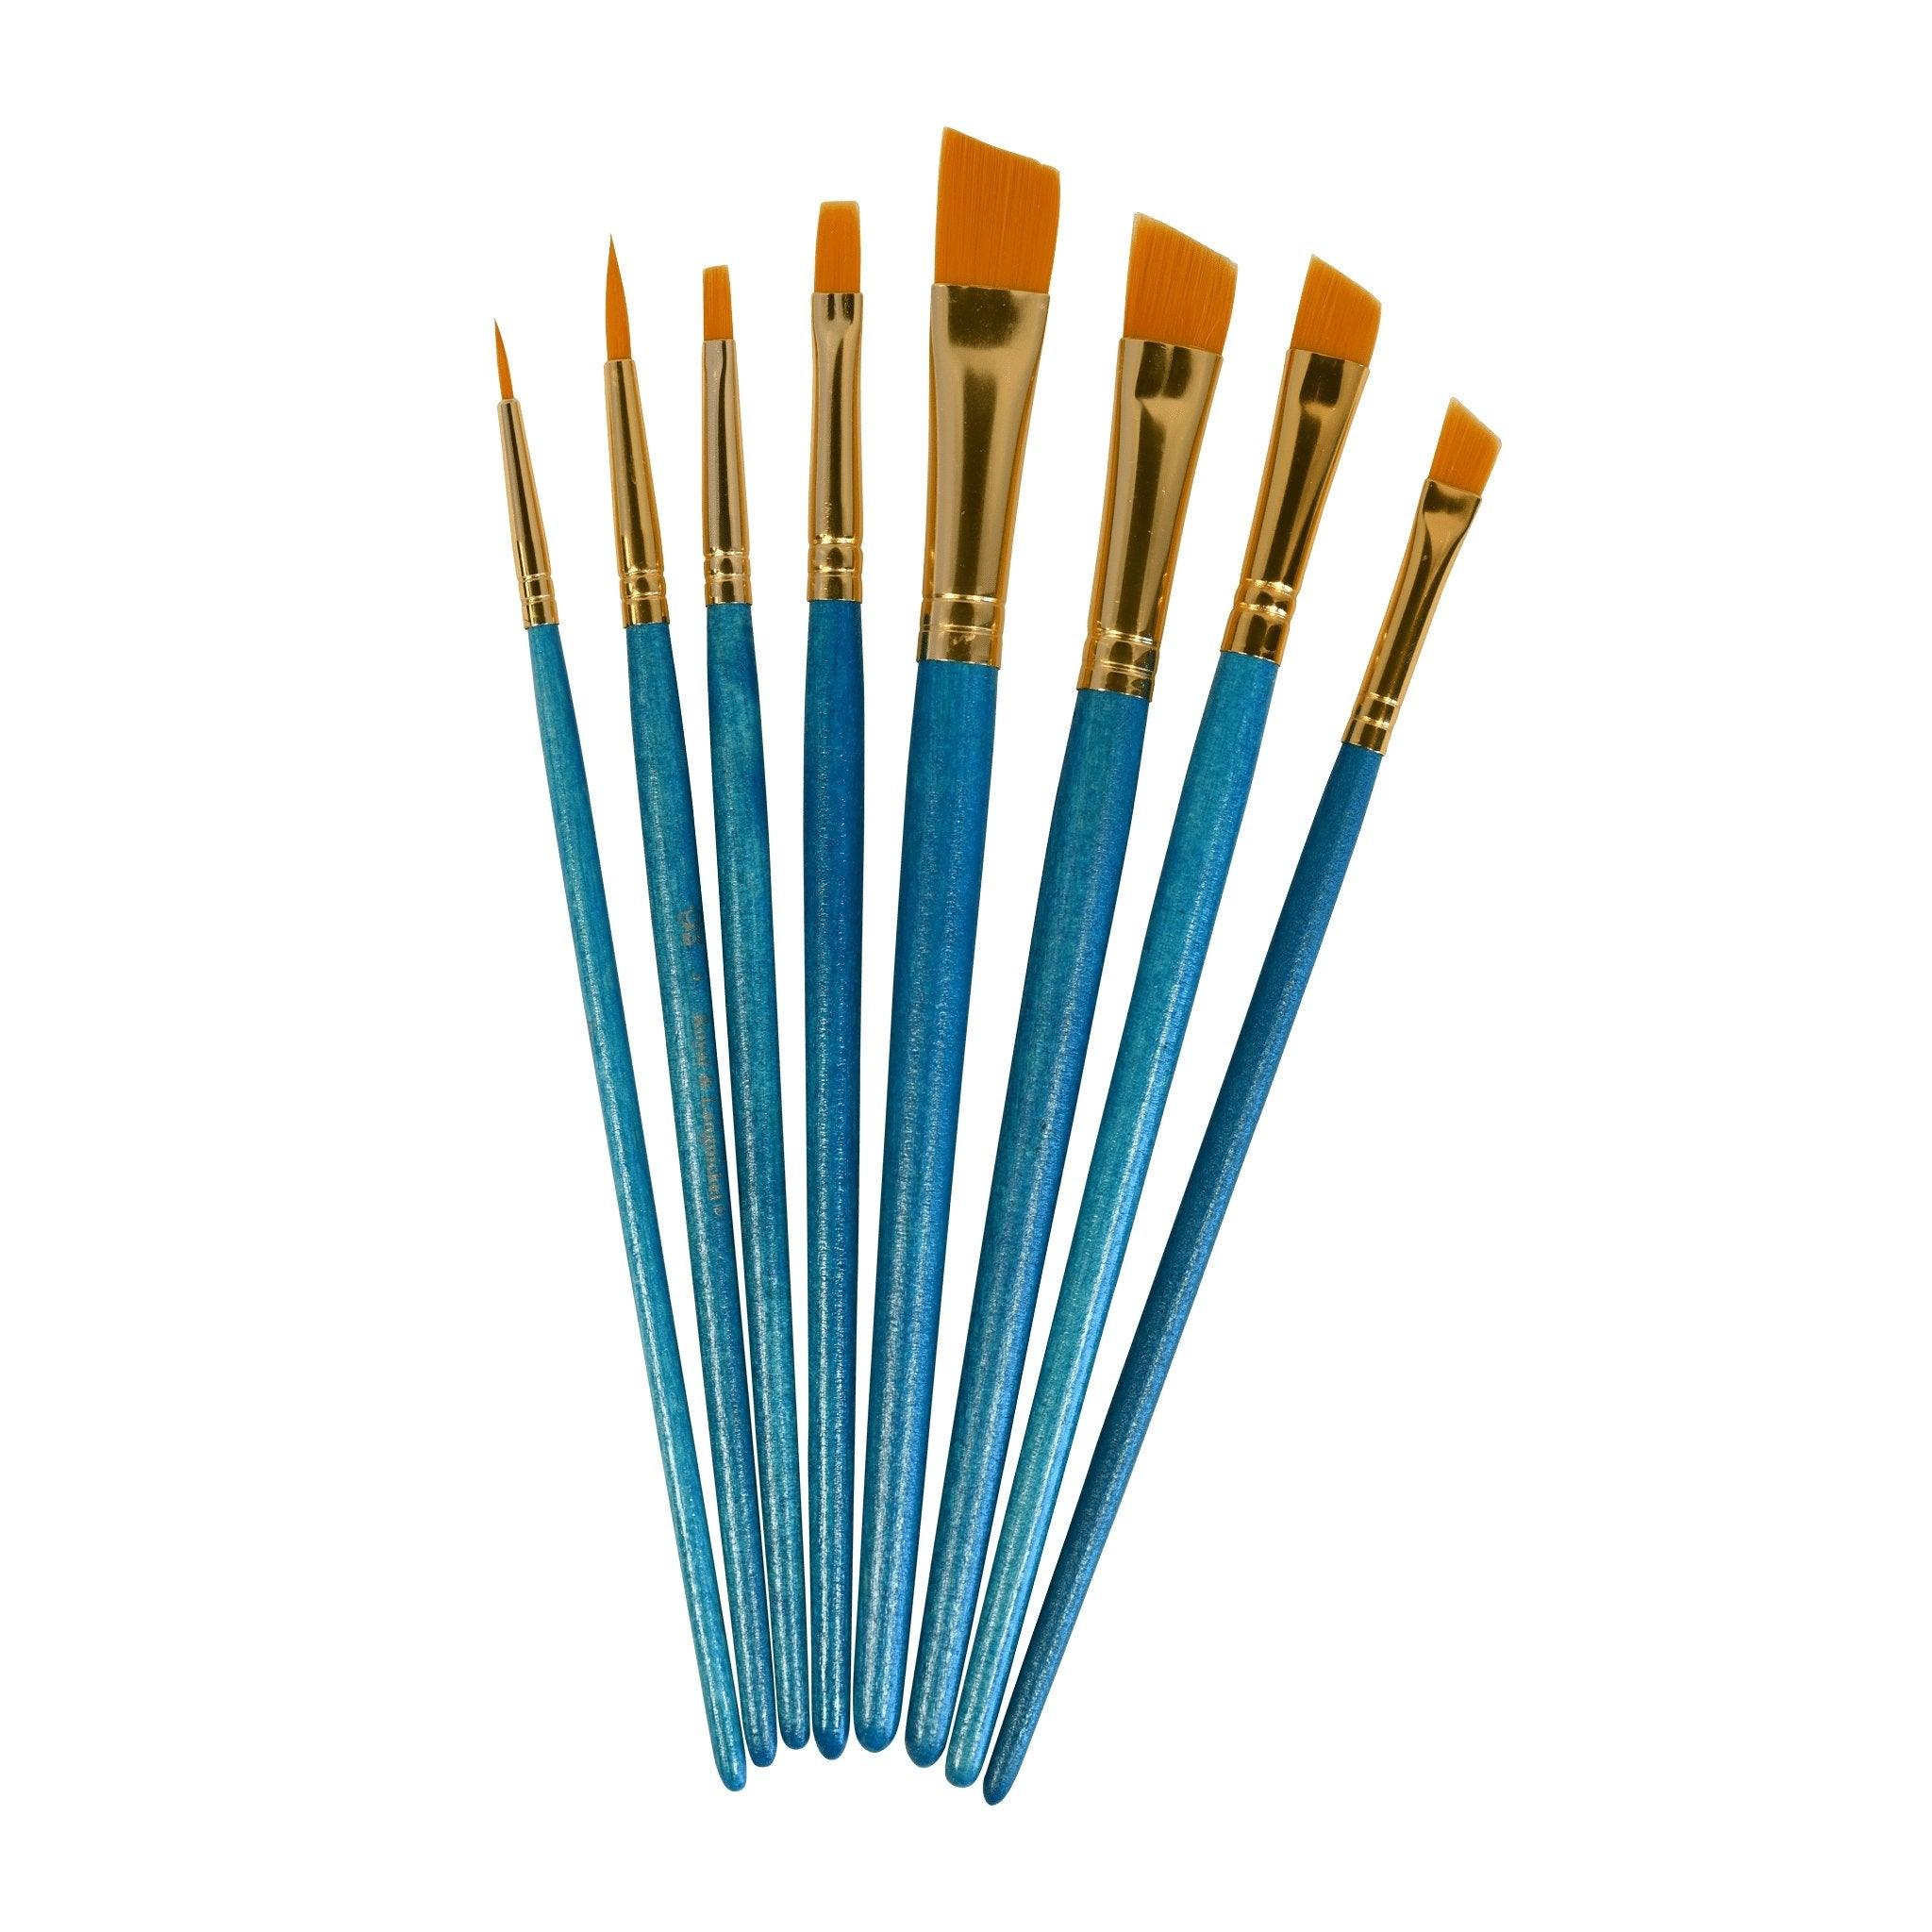 Gold Taklon Brush Set - Matuska Taxidermy Supply Company